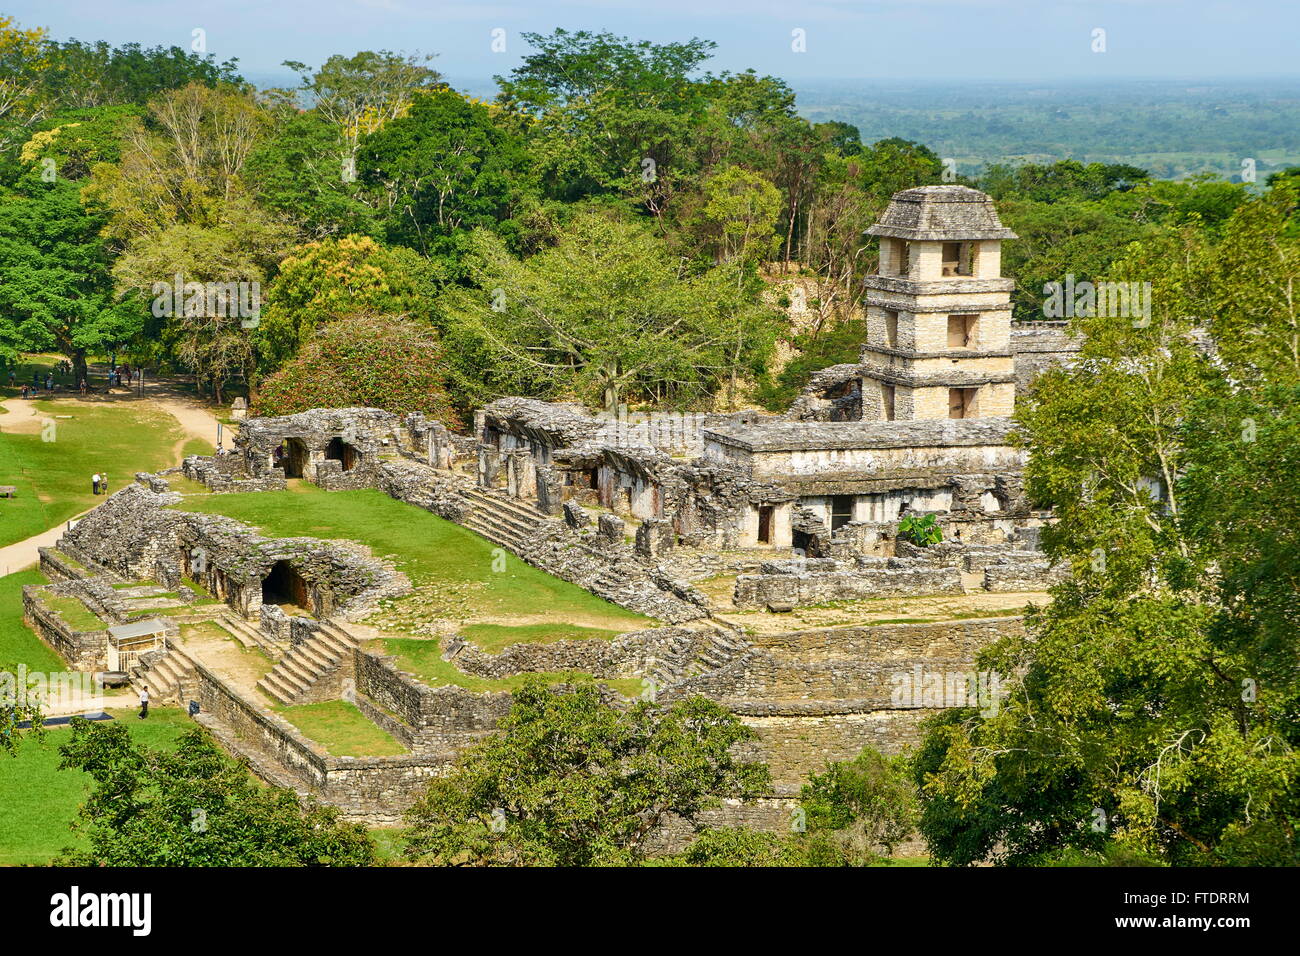 Ruine de Maya Palace, Palenque, site archéologique de Palenque, Chiapas, Mexique Banque D'Images